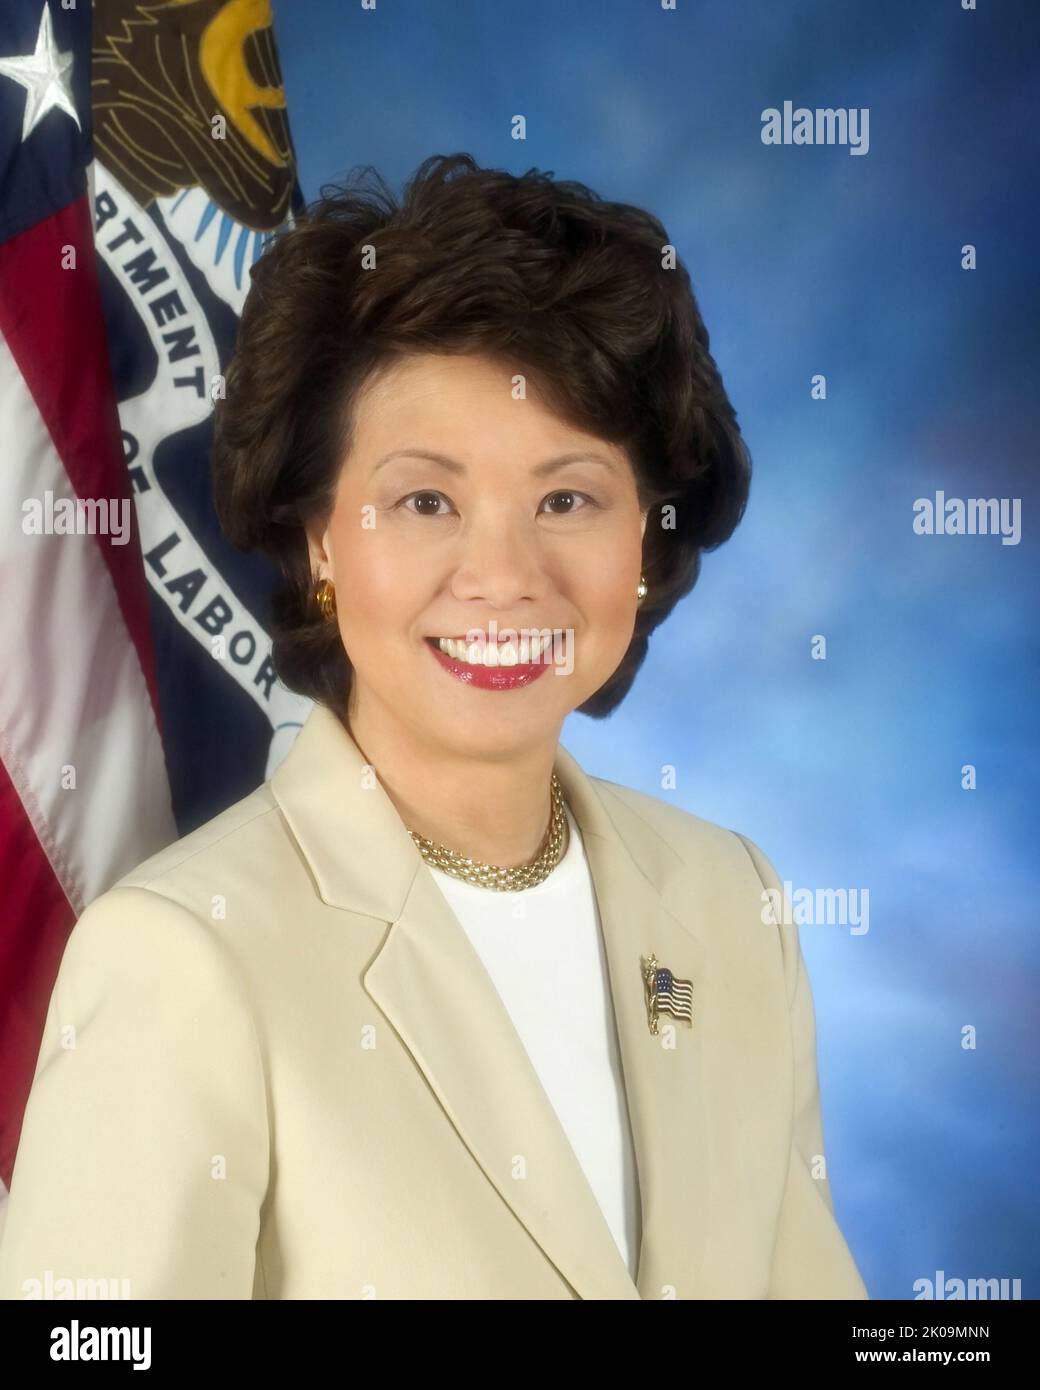 Elaine LAN Chao (26 marzo 1953) è una . Un membro del Partito Repubblicano, Chao è stato Segretario dei Trasporti del 18th nell’amministrazione Trump dal 2017 al 2021, e come Segretario del lavoro del 24th nell’amministrazione Bush dal 2001 al 2009. Foto Stock